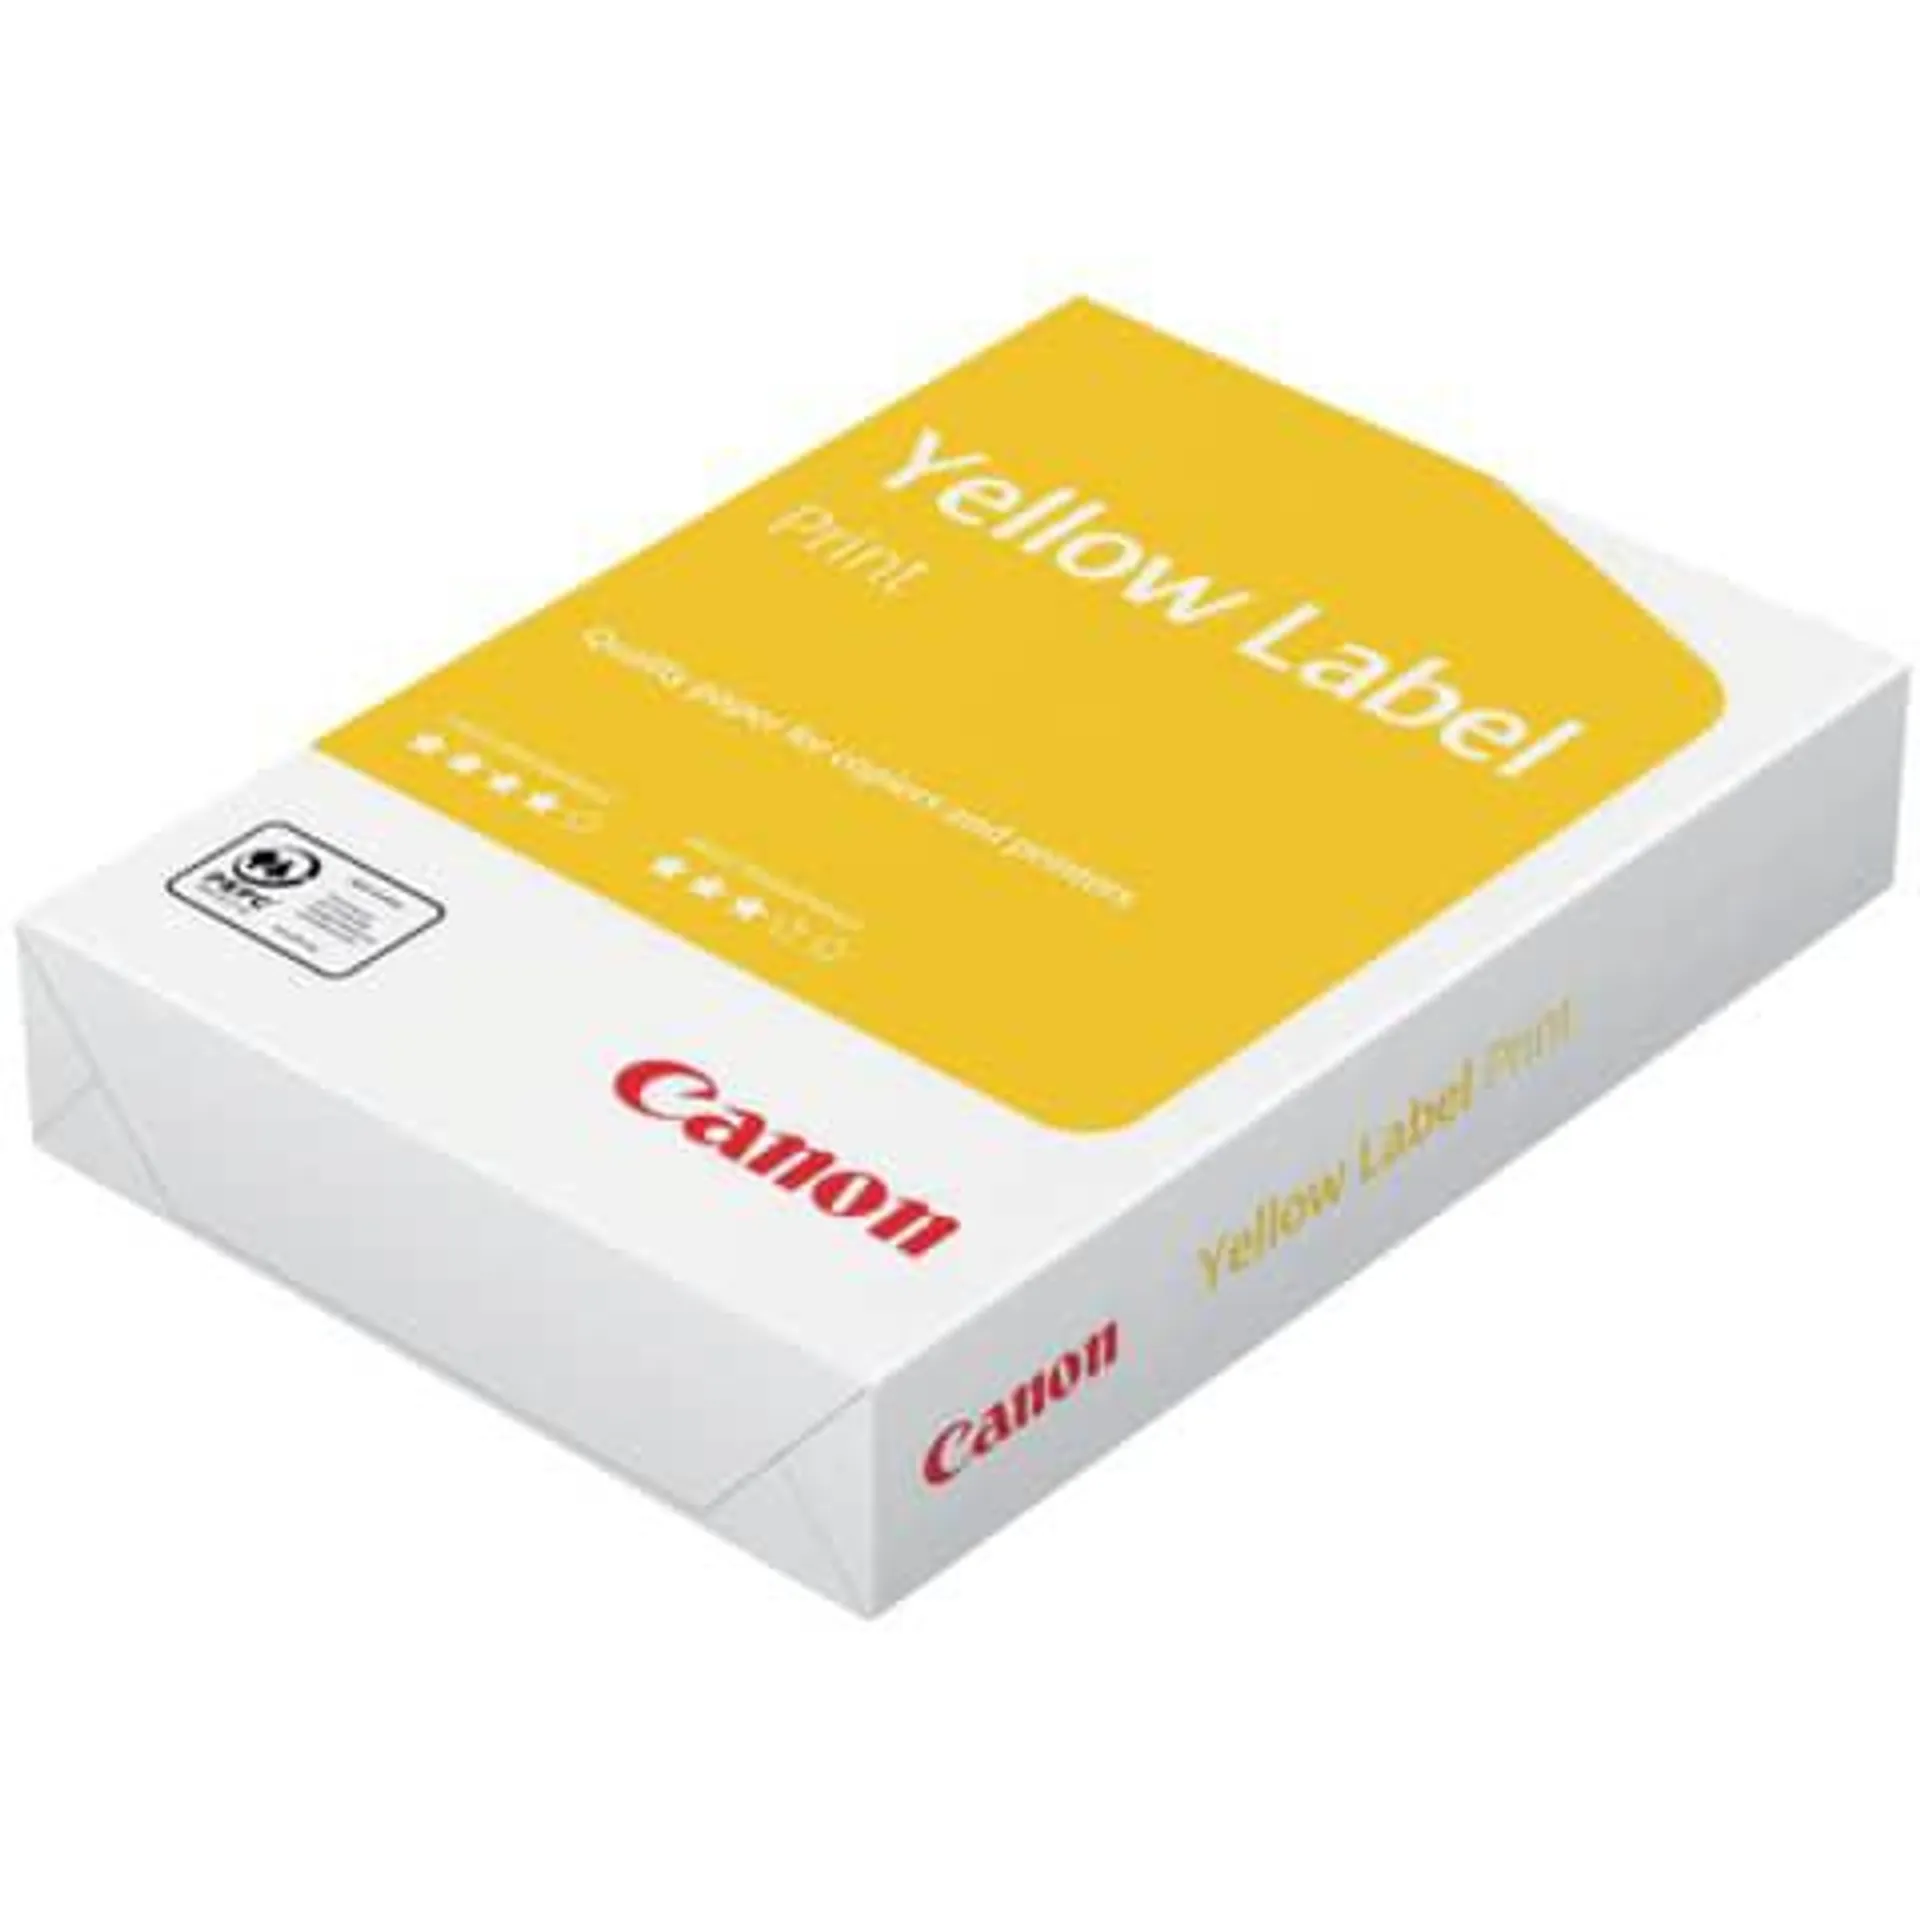 Kopierpapier A4 80g weiß 99908200 CANON YellowLabel Print 80 A4